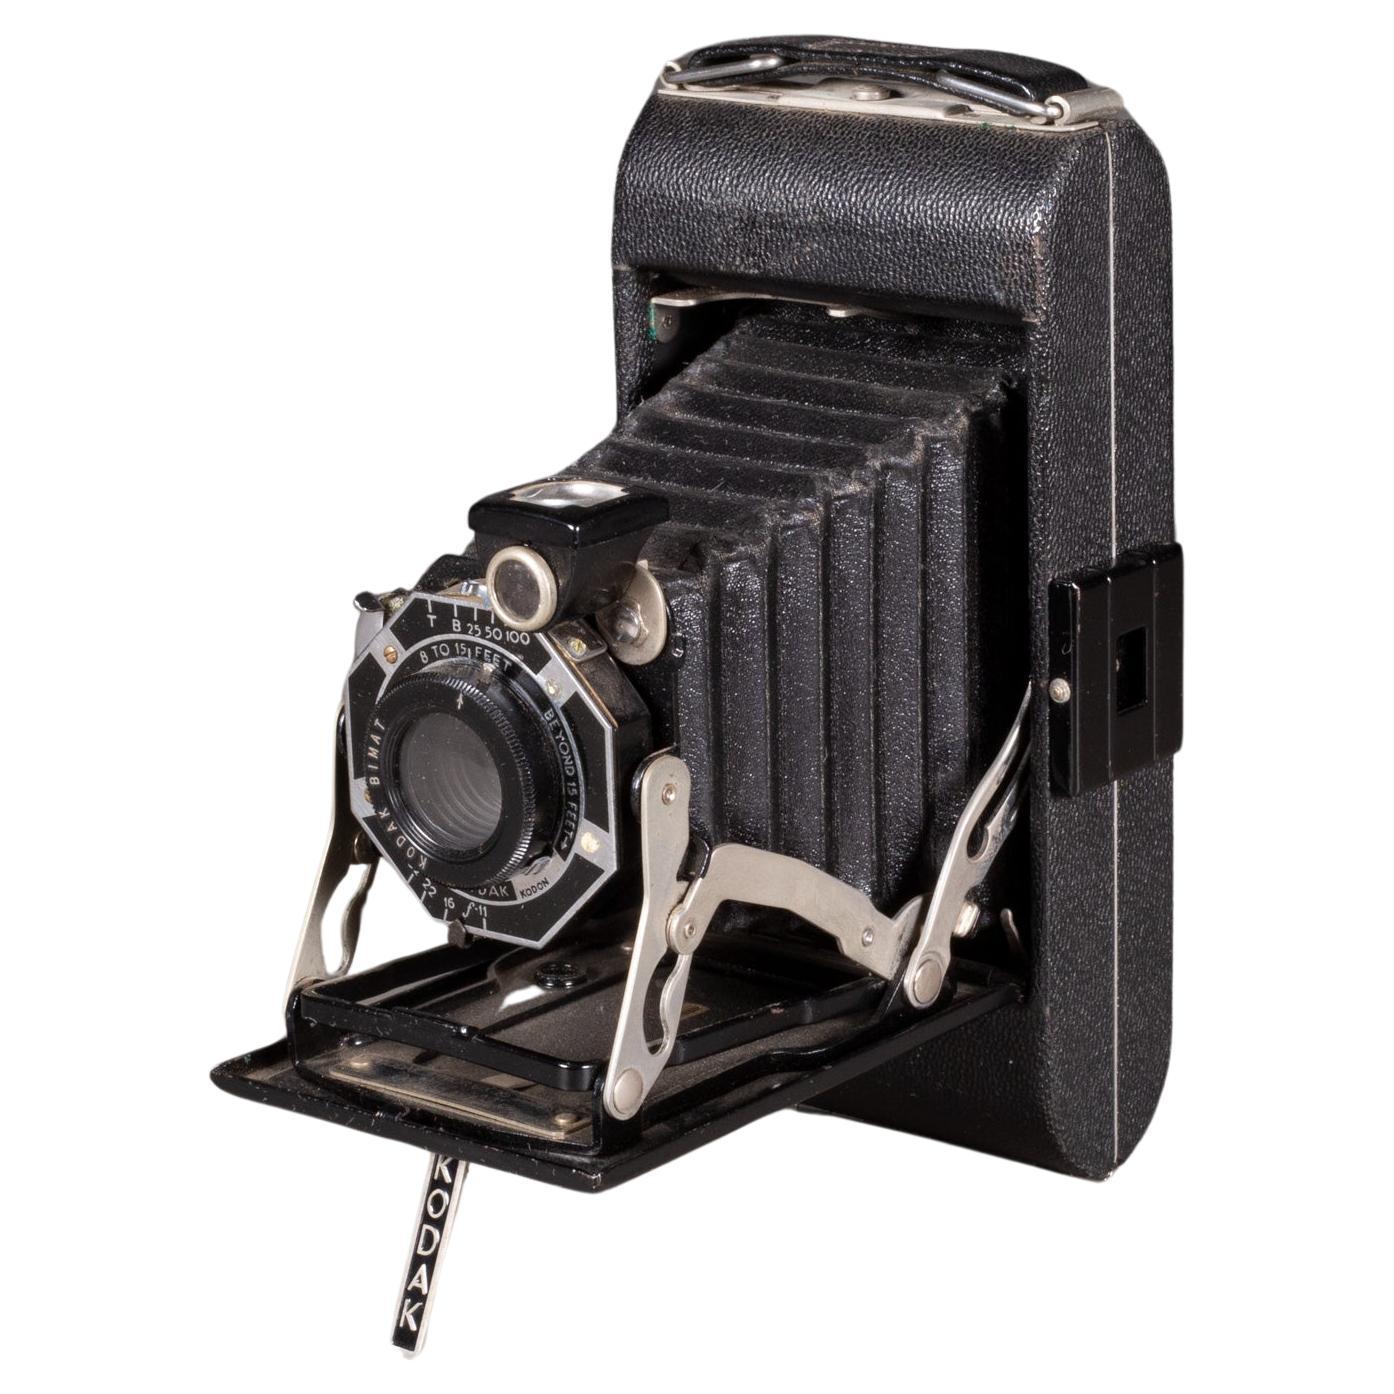 Art Deco Kodak Junior Six-20 Bimat Folding Camera c.1930